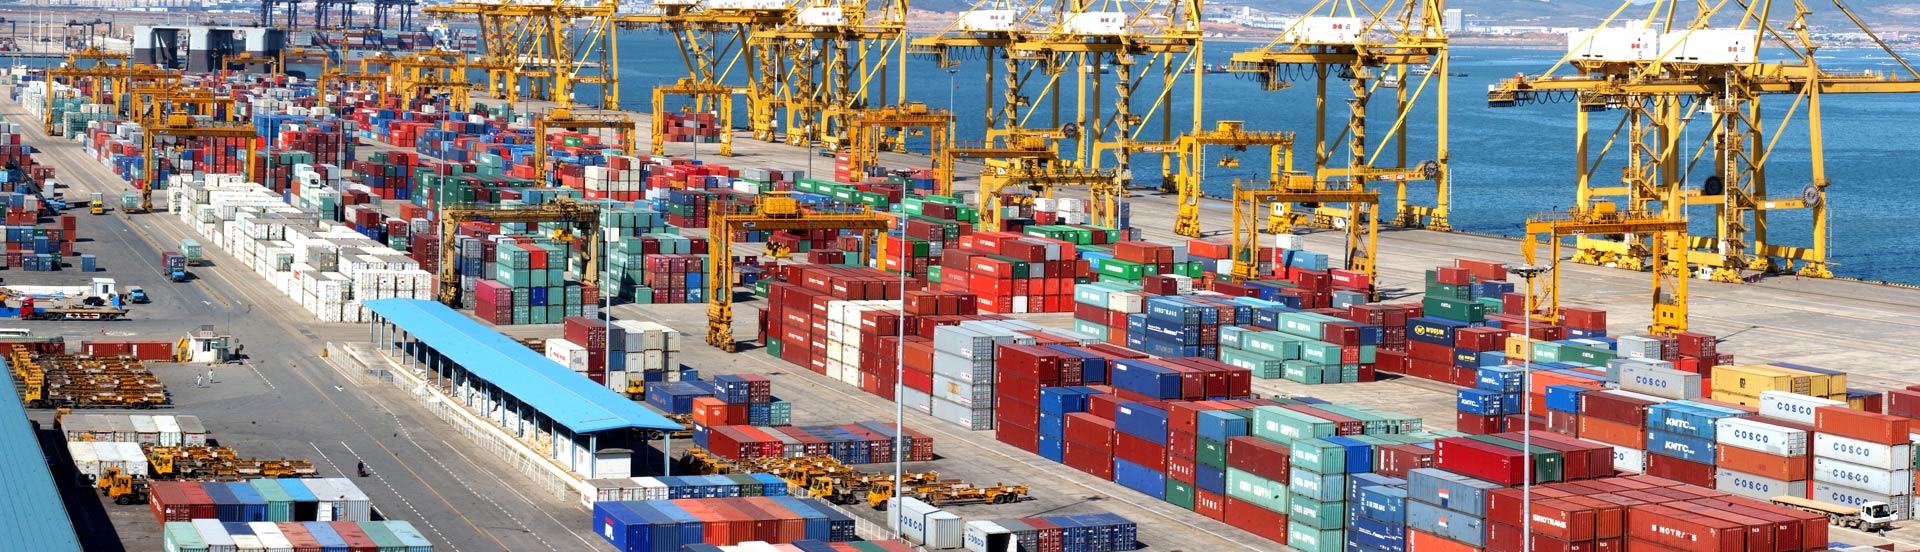 天津港到Port Qasim,(KARACHI) Pakistan 卡西姆港,卡拉奇 巴基斯坦
海运费集装箱海运费